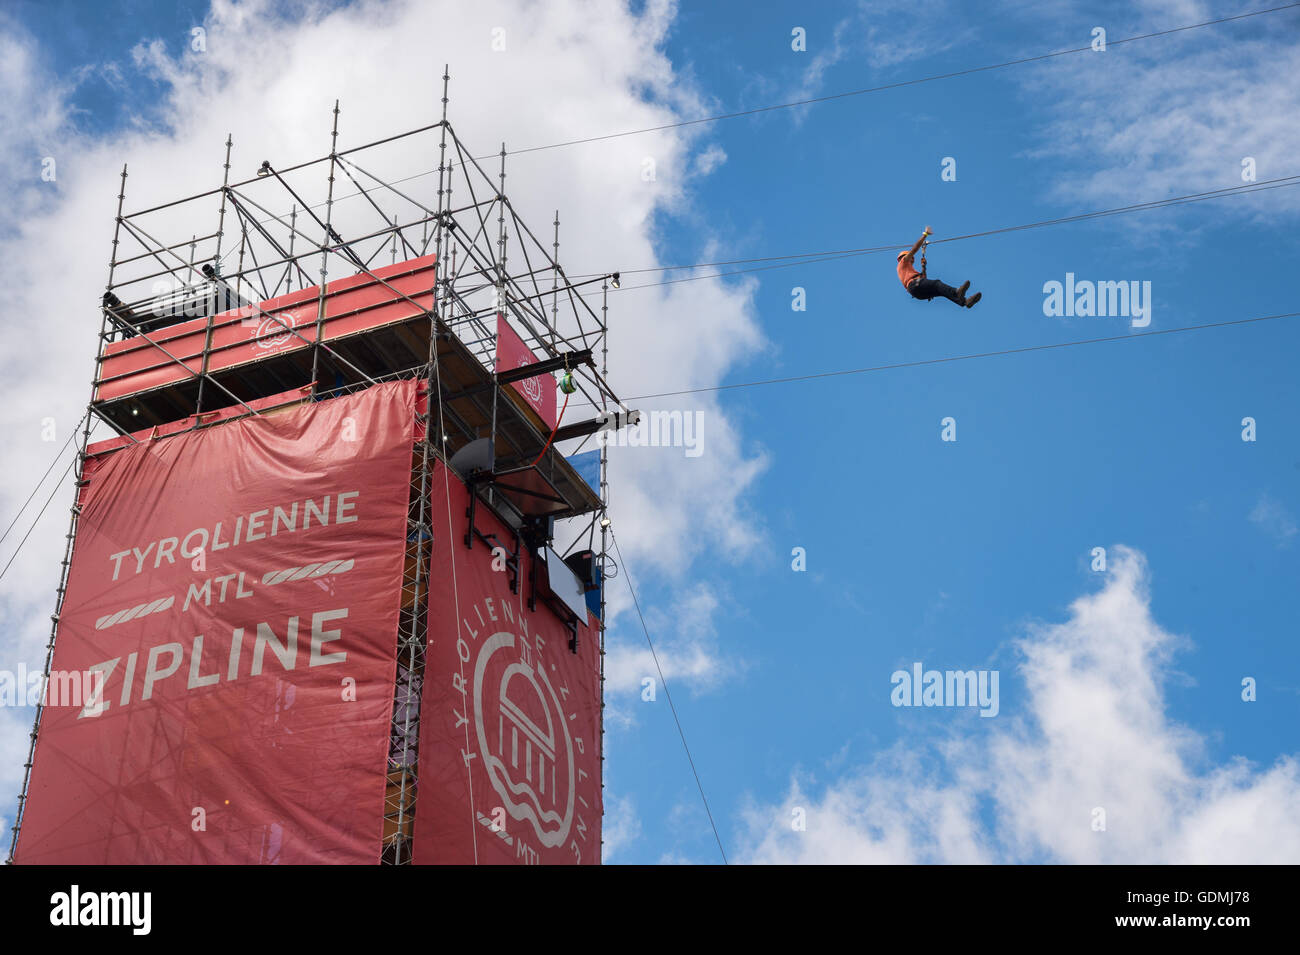 Un hombre está montando MTL zipline en el Viejo Puerto de Montreal. Foto de stock